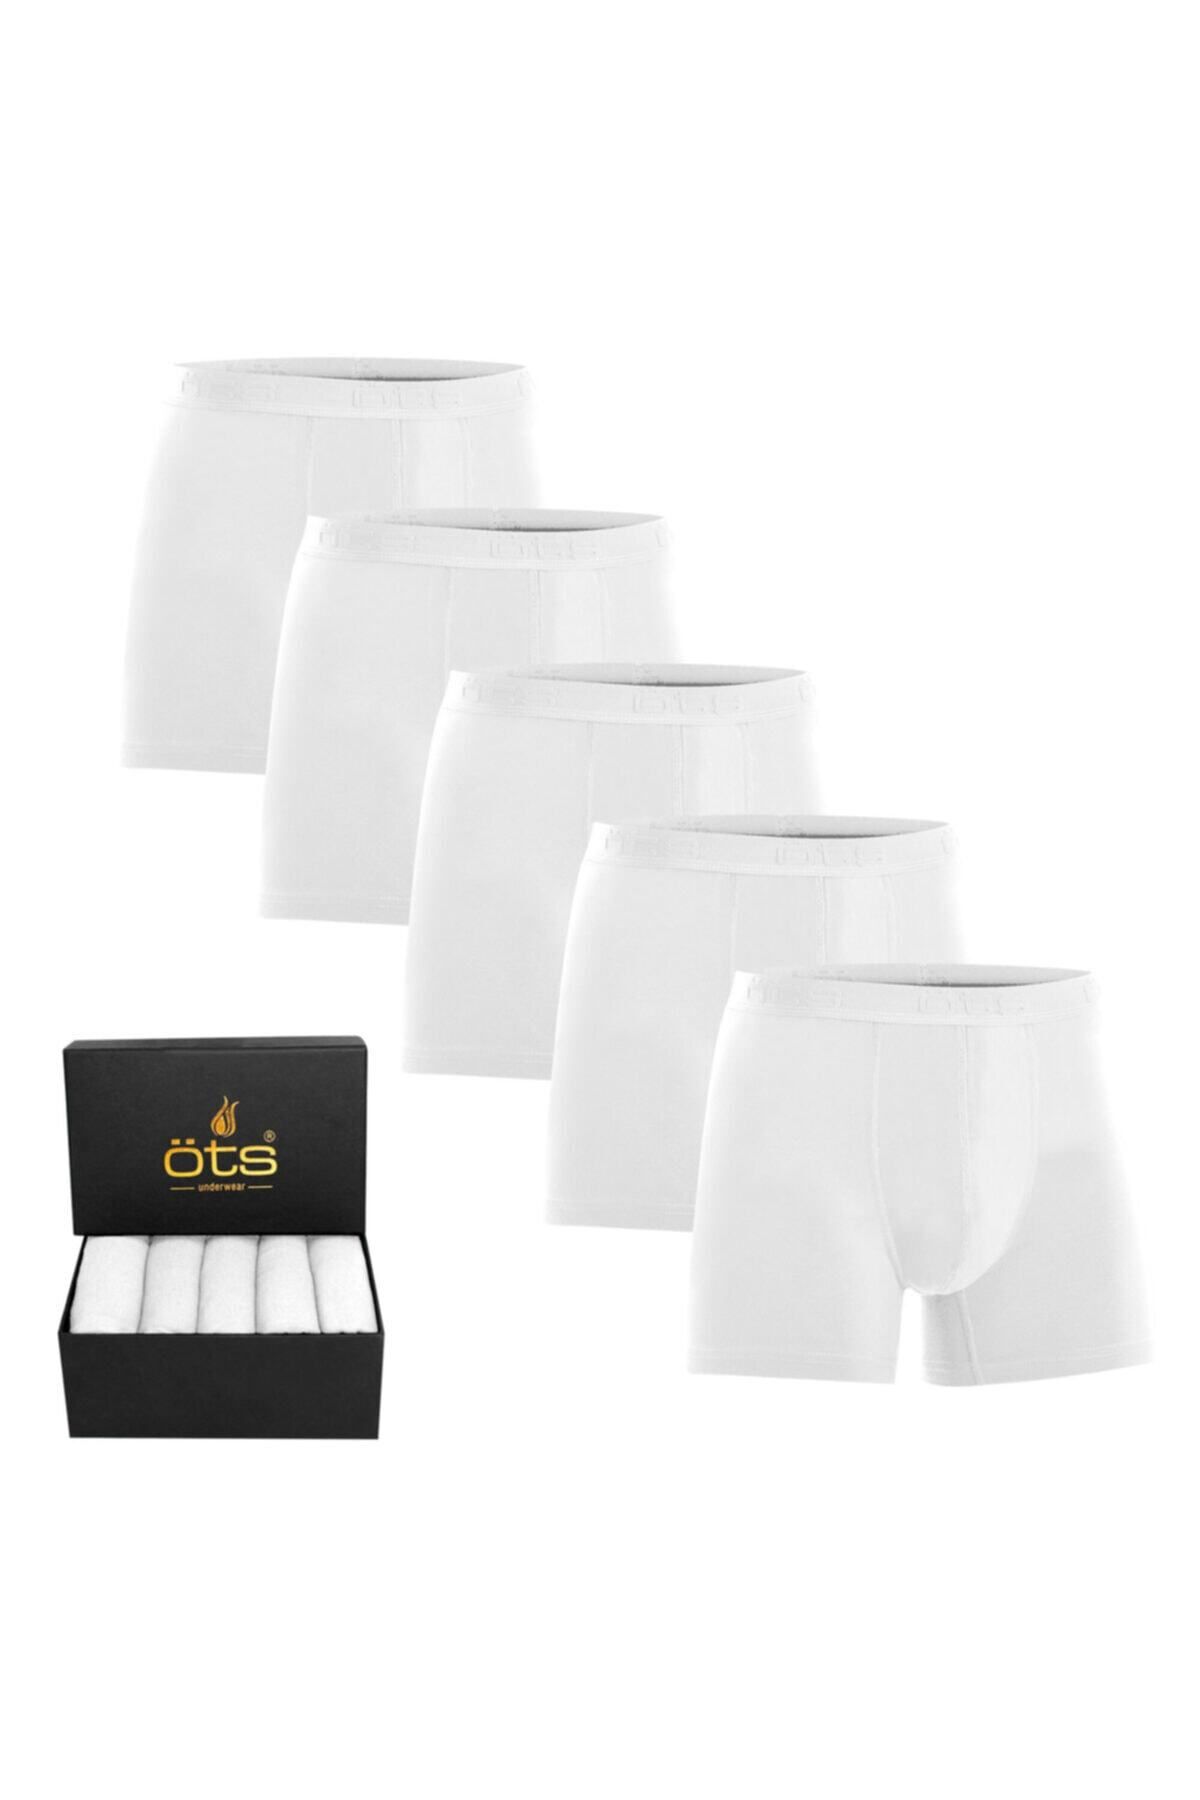 Öts Erkek Modal Boxer 5'li Paket Pamuklu Esnek Kumaş Premium Özel Hediye Kutusunda